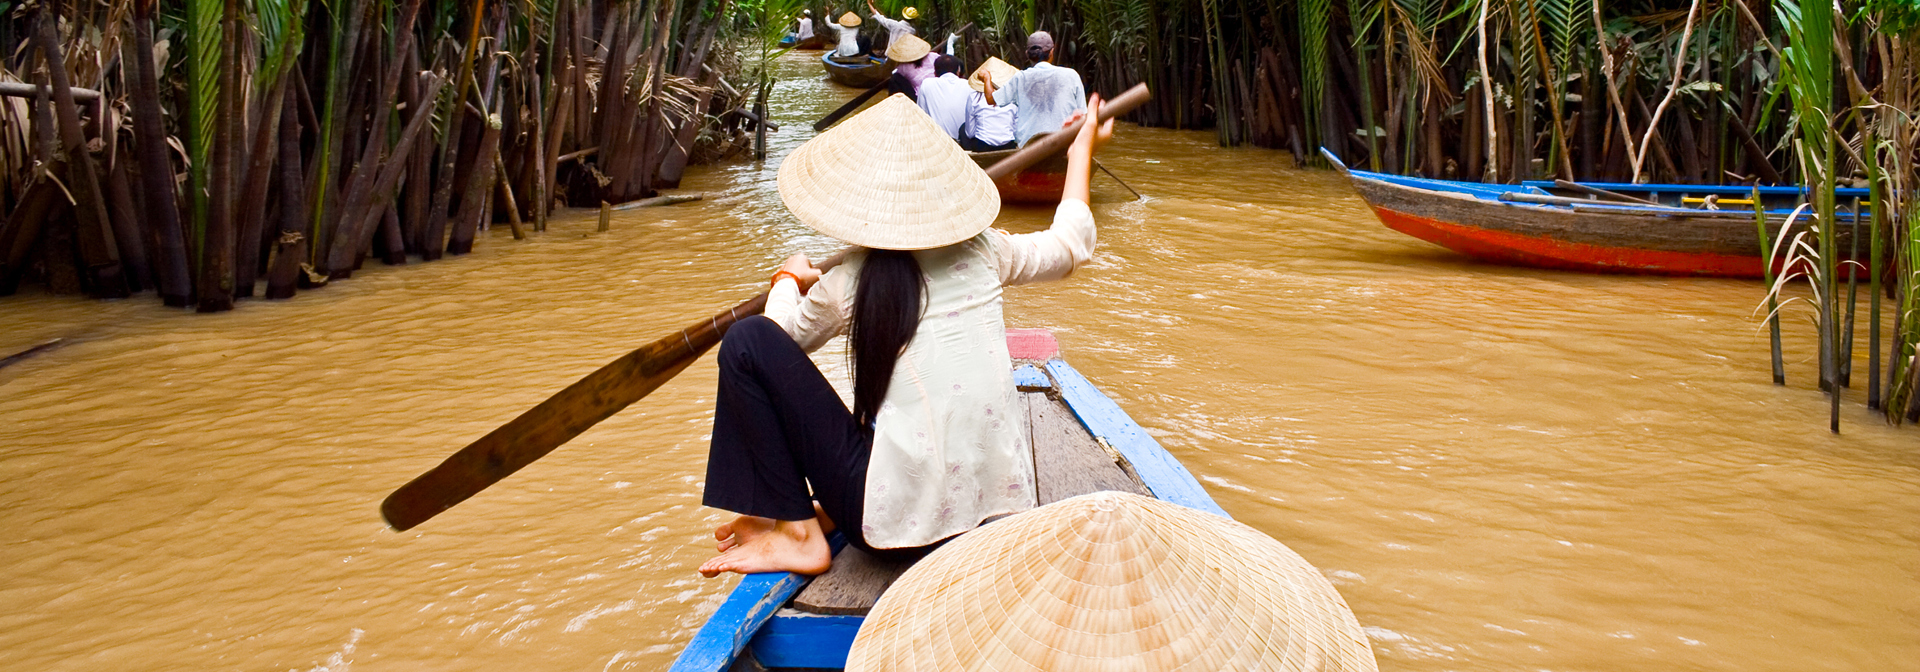 Vietnam - mekong floden_kvinde_baad_02